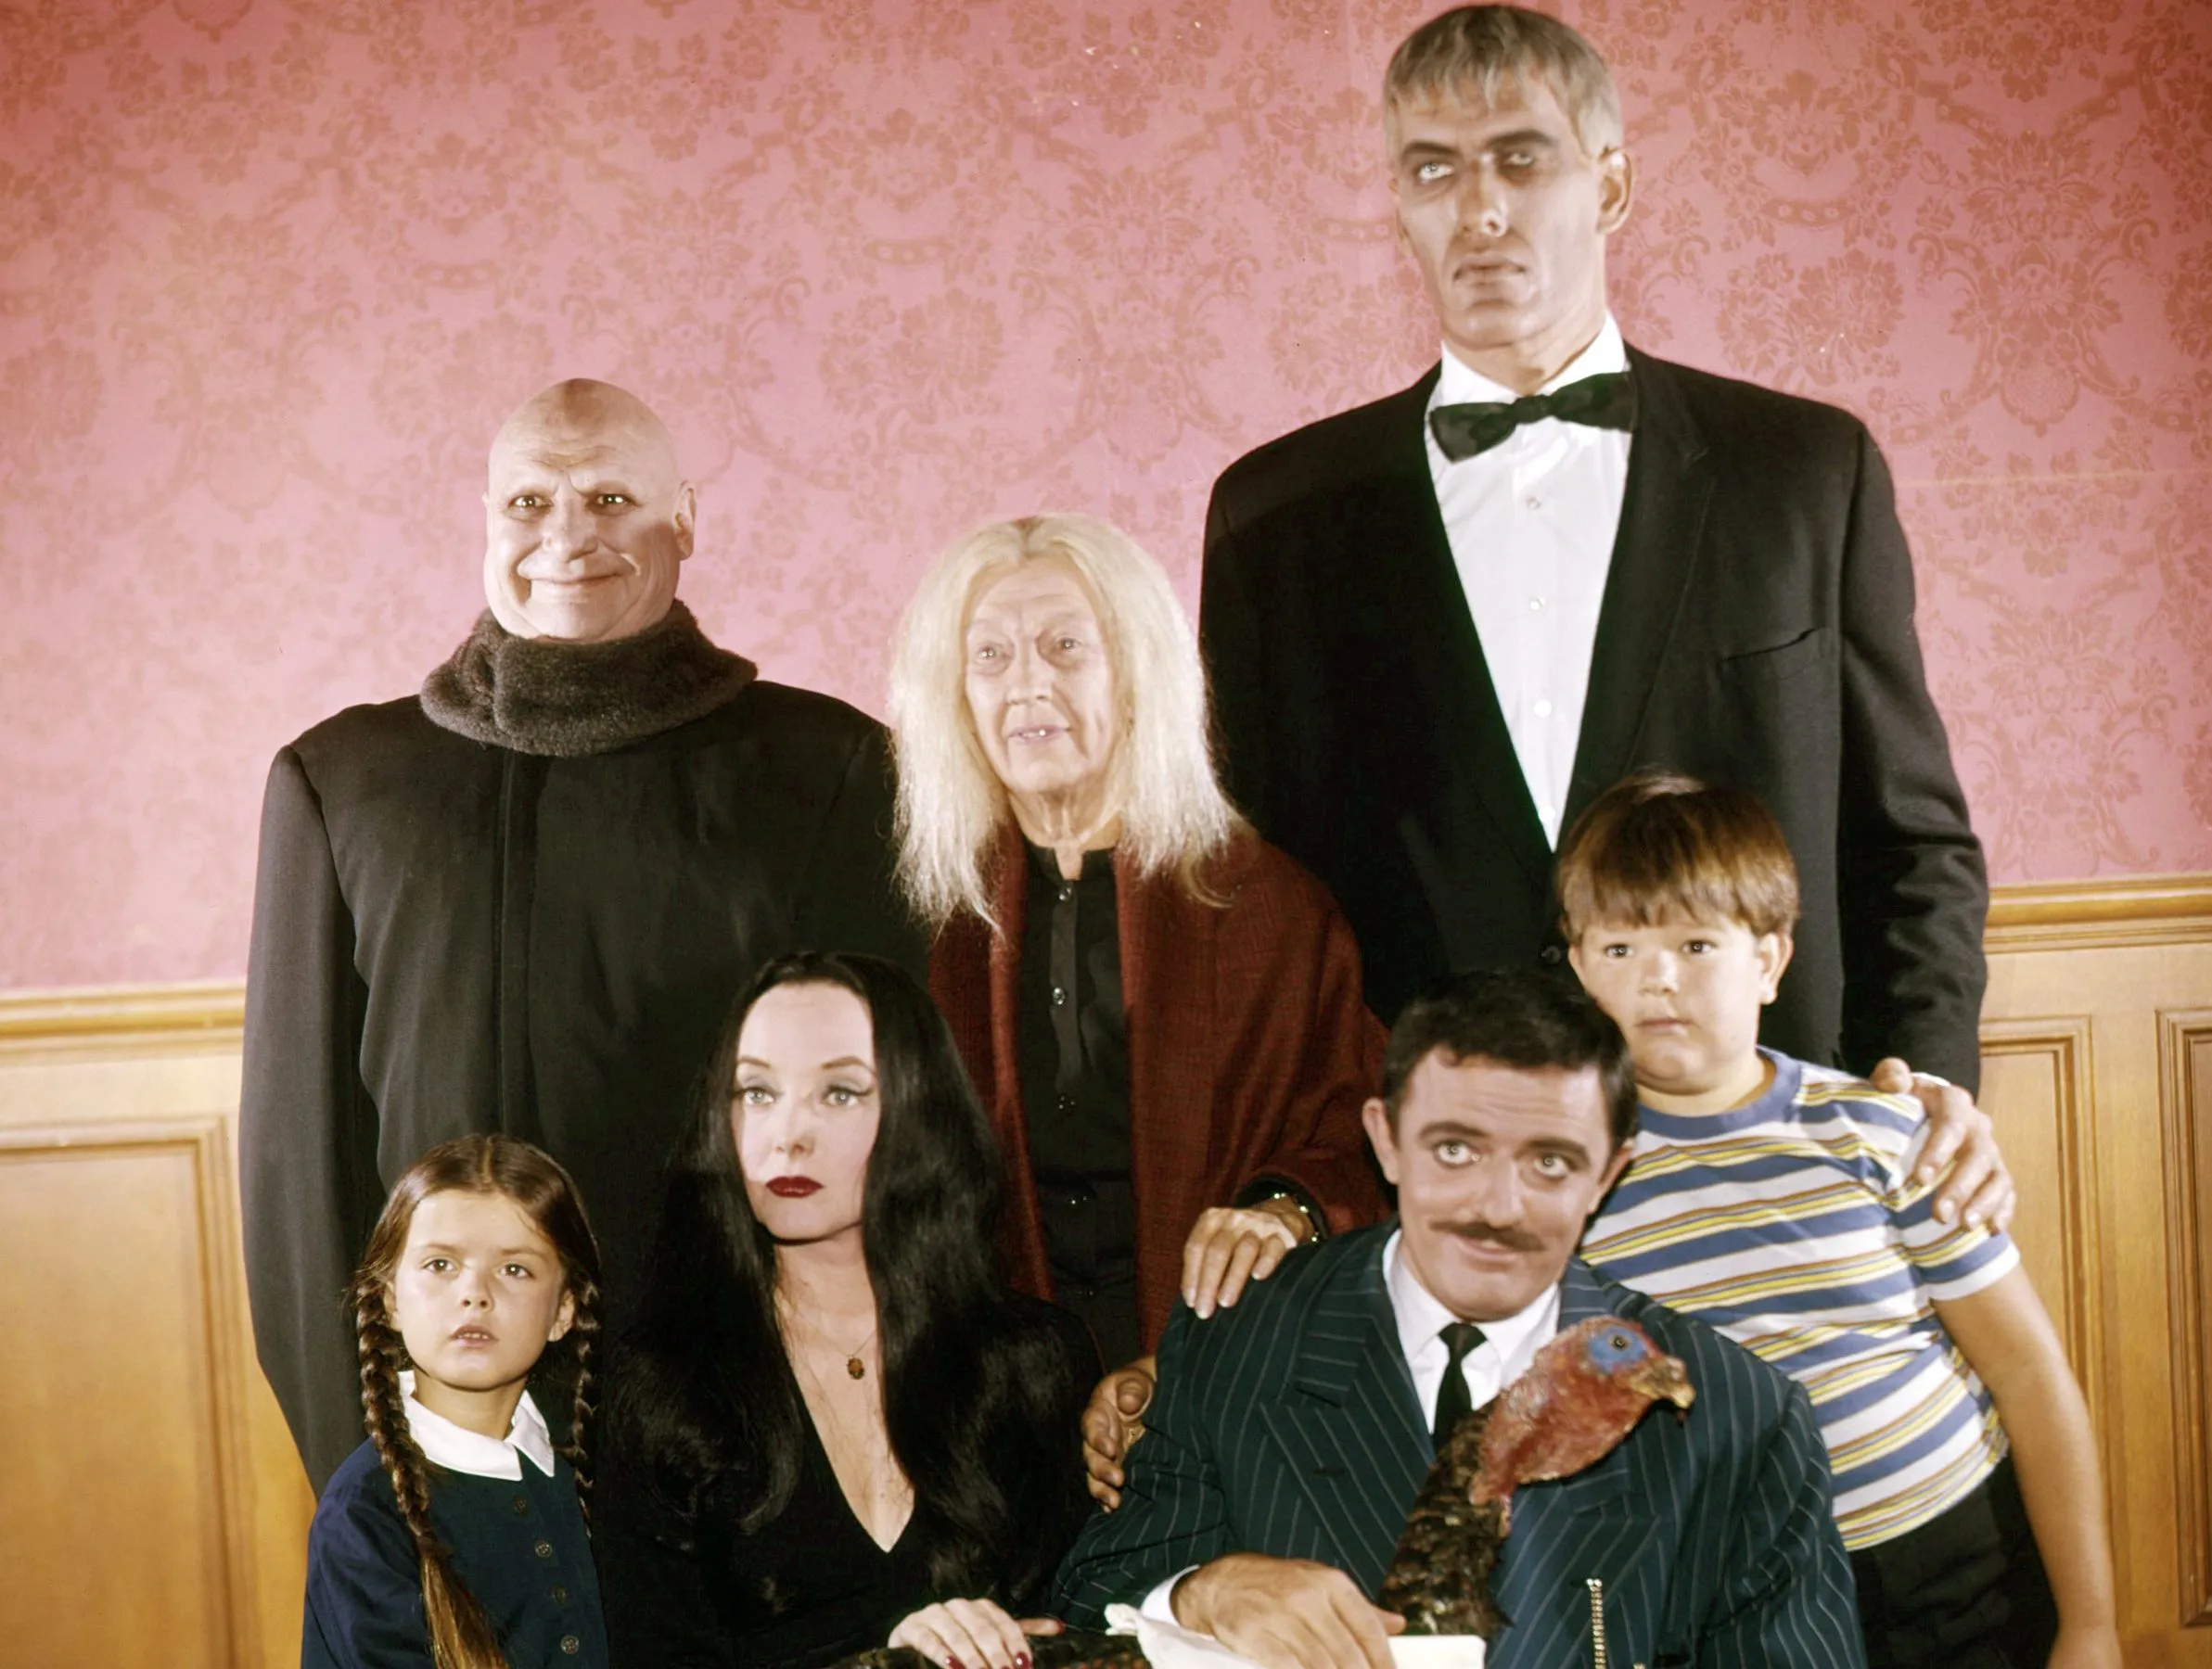 Addams Family Original Cast E1638461783416 ?quality=82&strip=all